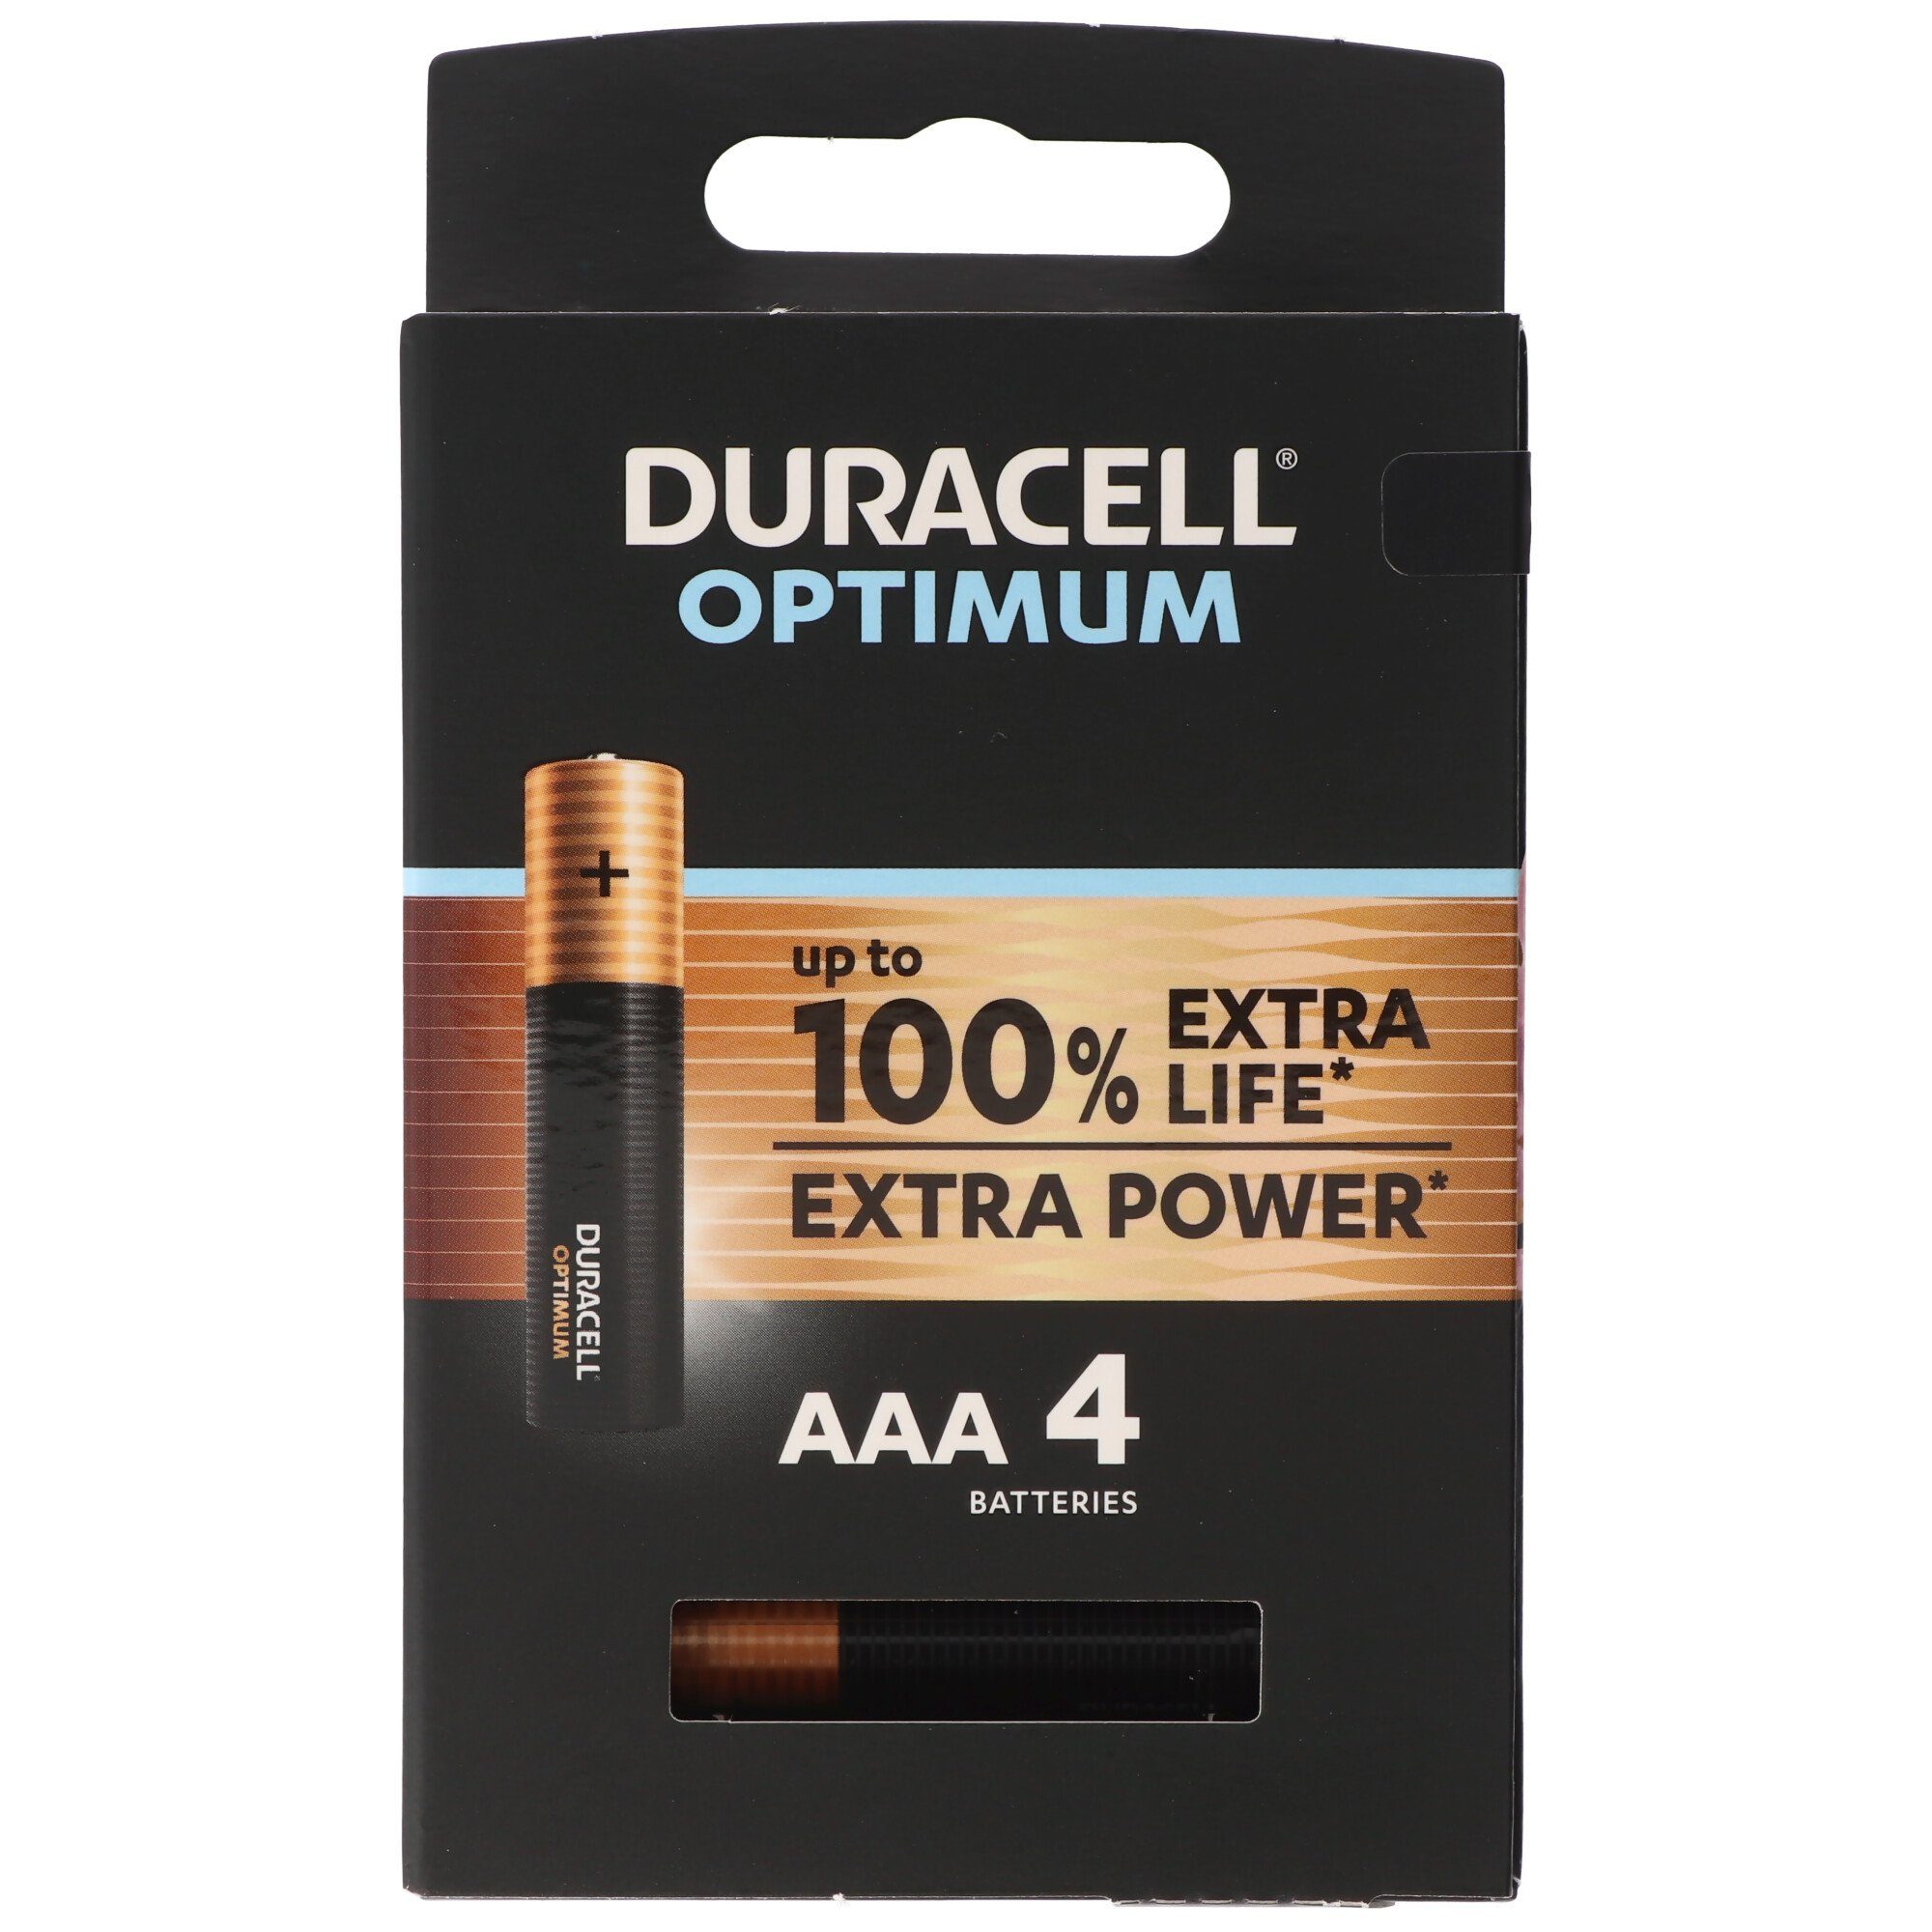 Duracell Duracell Optimum AAA Mignon Alkaline-Batterien, 1.5V LR03 MX2400, 4er Batterie